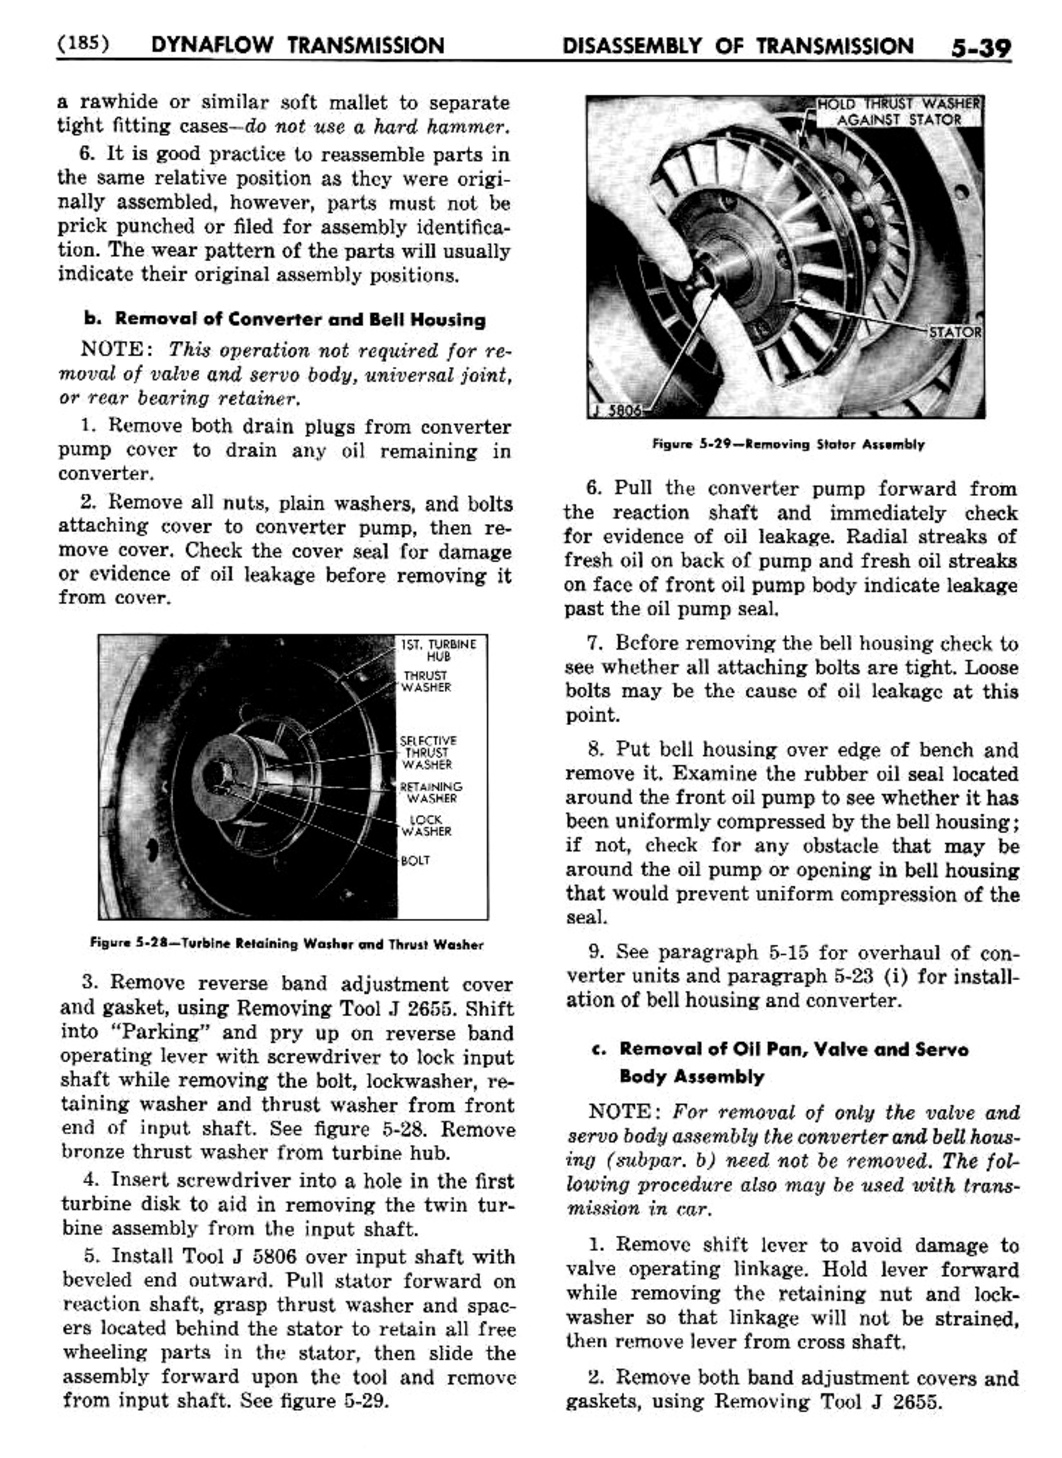 n_06 1956 Buick Shop Manual - Dynaflow-039-039.jpg